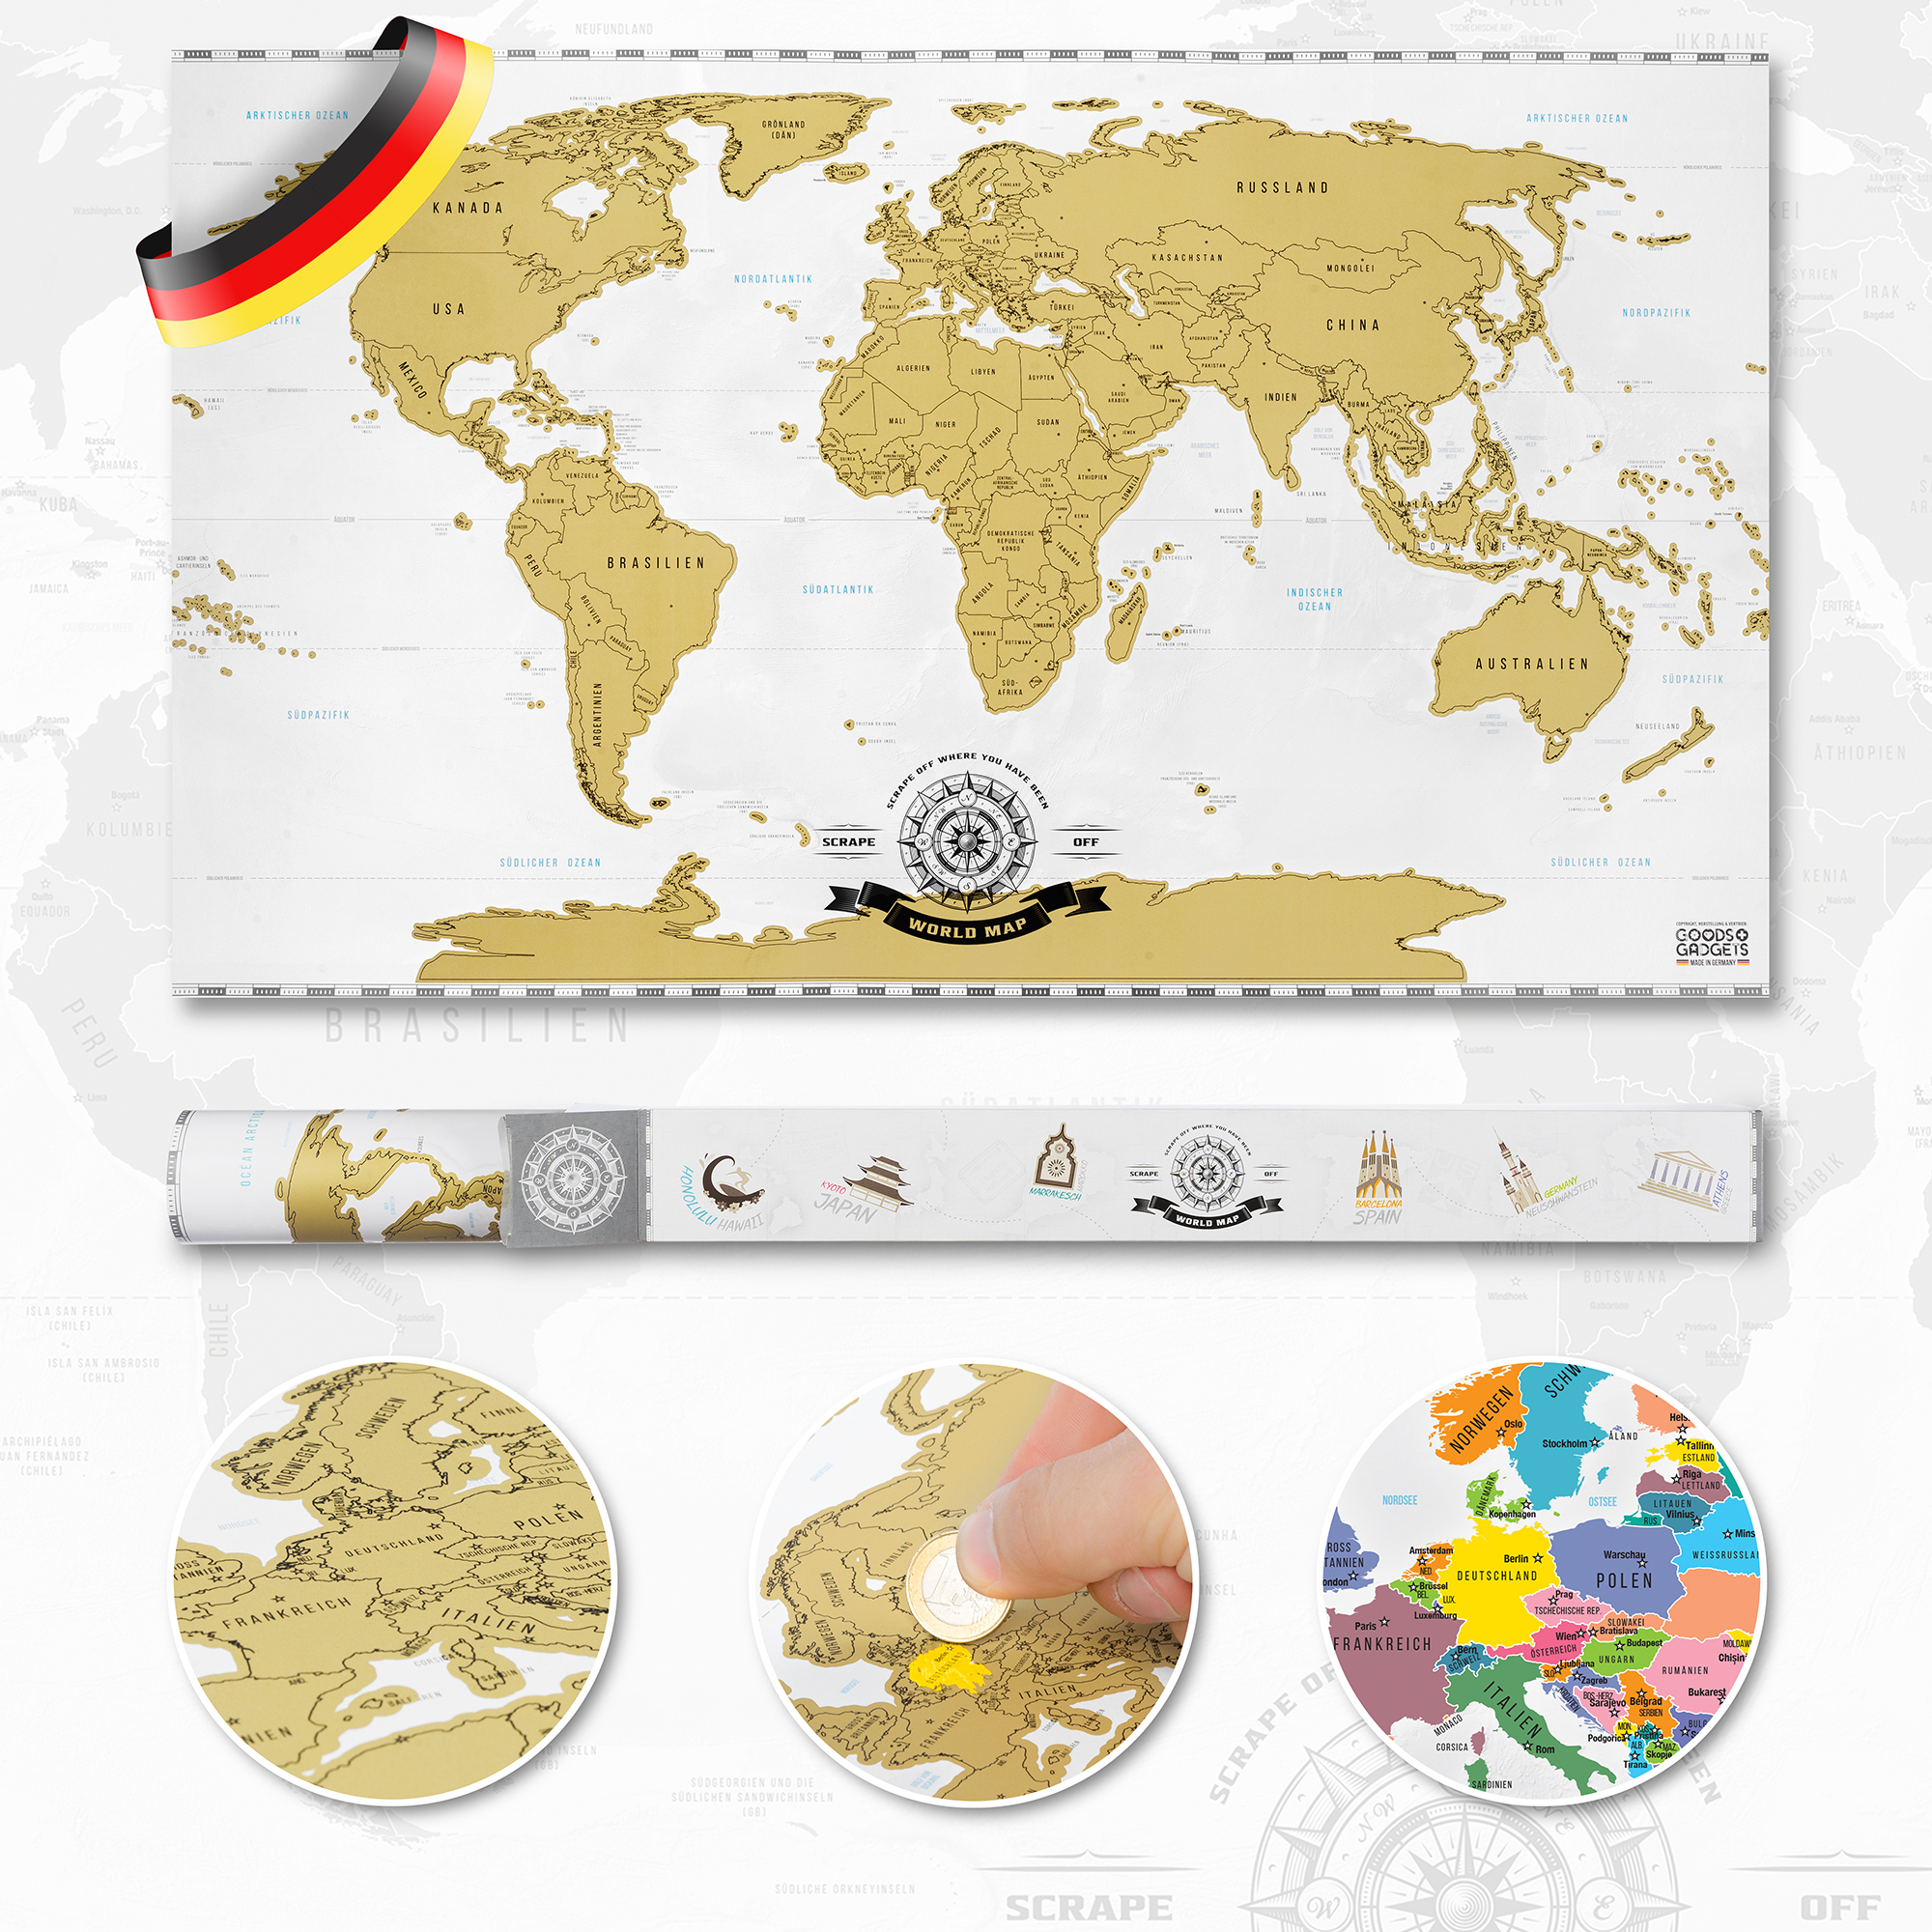 Rubbel Weltkarte Scrape Off World Map Poster-Karte Landkarte zum Rubbeln Xmas DE